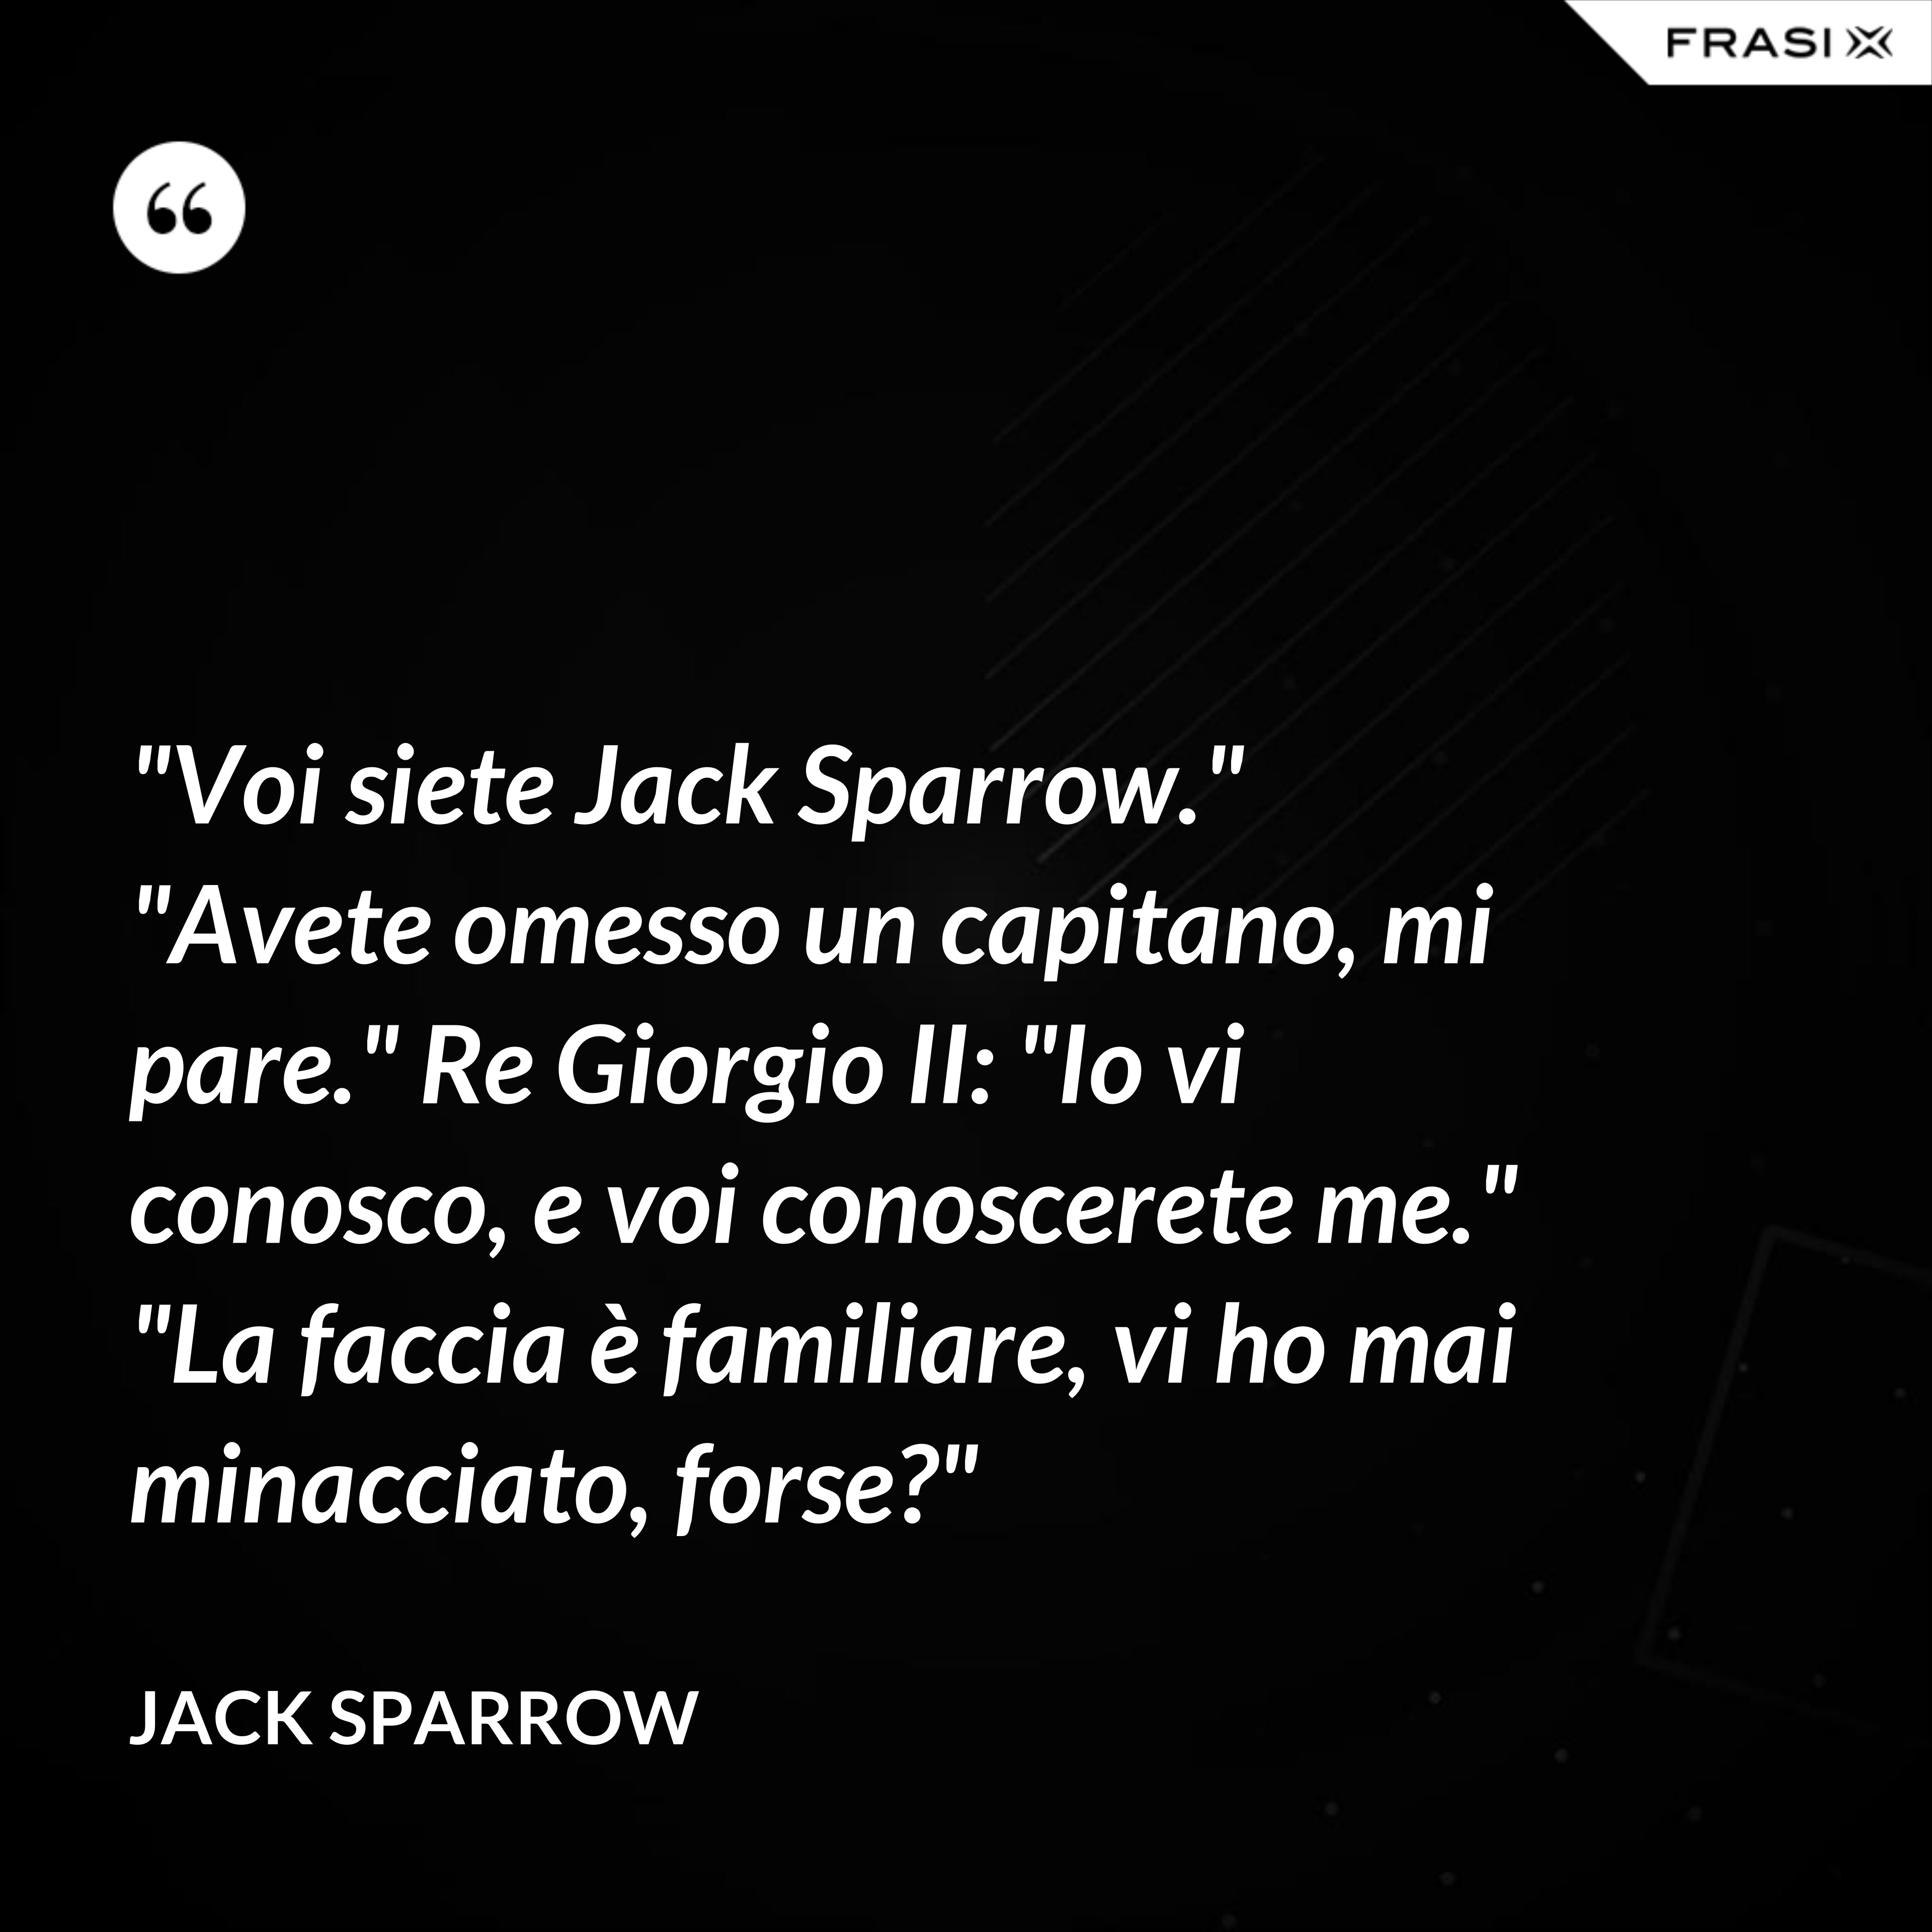 "Voi siete Jack Sparrow." "Avete omesso un capitano, mi pare." Re Giorgio II: "Io vi conosco, e voi conoscerete me." "La faccia è familiare, vi ho mai minacciato, forse?" - Jack Sparrow